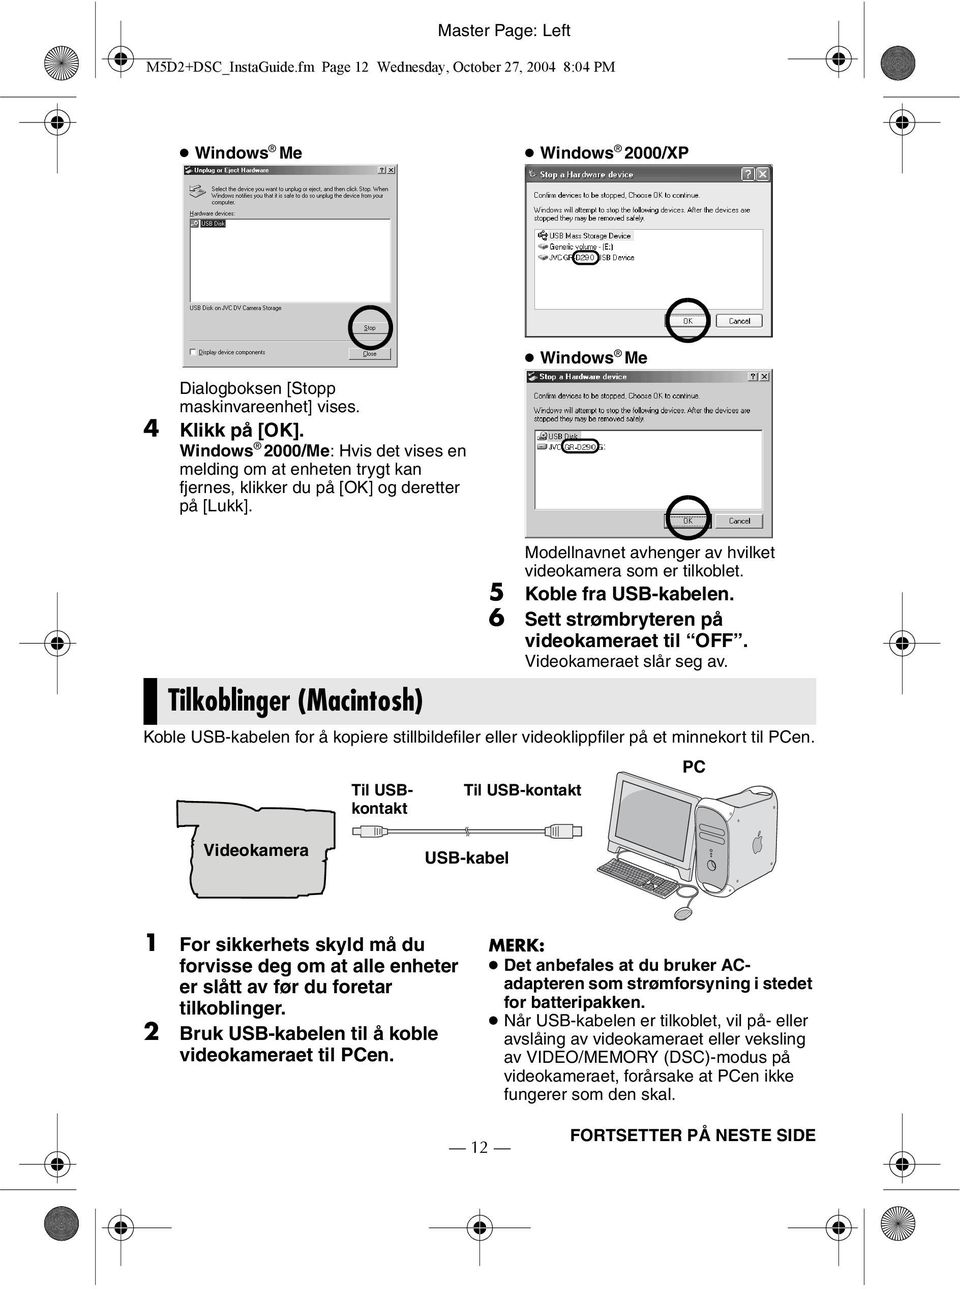 Windows Me Tilkoblinger (Macintosh) Modellnavnet avhenger av hvilket videokamera som er tilkoblet. 5 Koble fra USB-kabelen. 6 Sett strømbryteren på videokameraet til OFF. Videokameraet slår seg av.